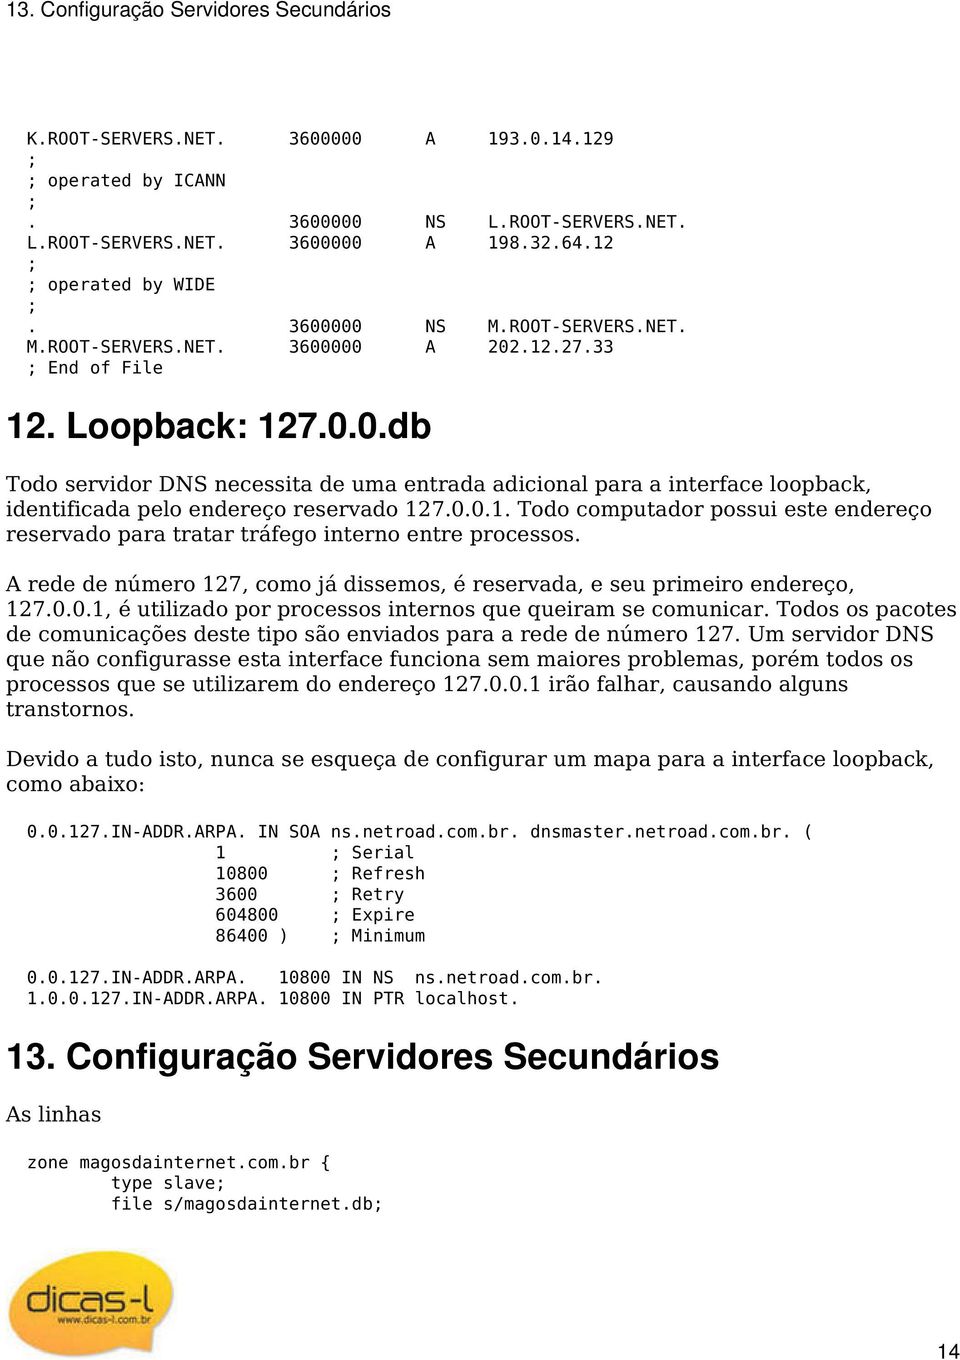 0.0.1. Todo computador possui este endereço reservado para tratar tráfego interno entre processos. A rede de número 127, como já dissemos, é reservada, e seu primeiro endereço, 127.0.0.1, é utilizado por processos internos que queiram se comunicar.